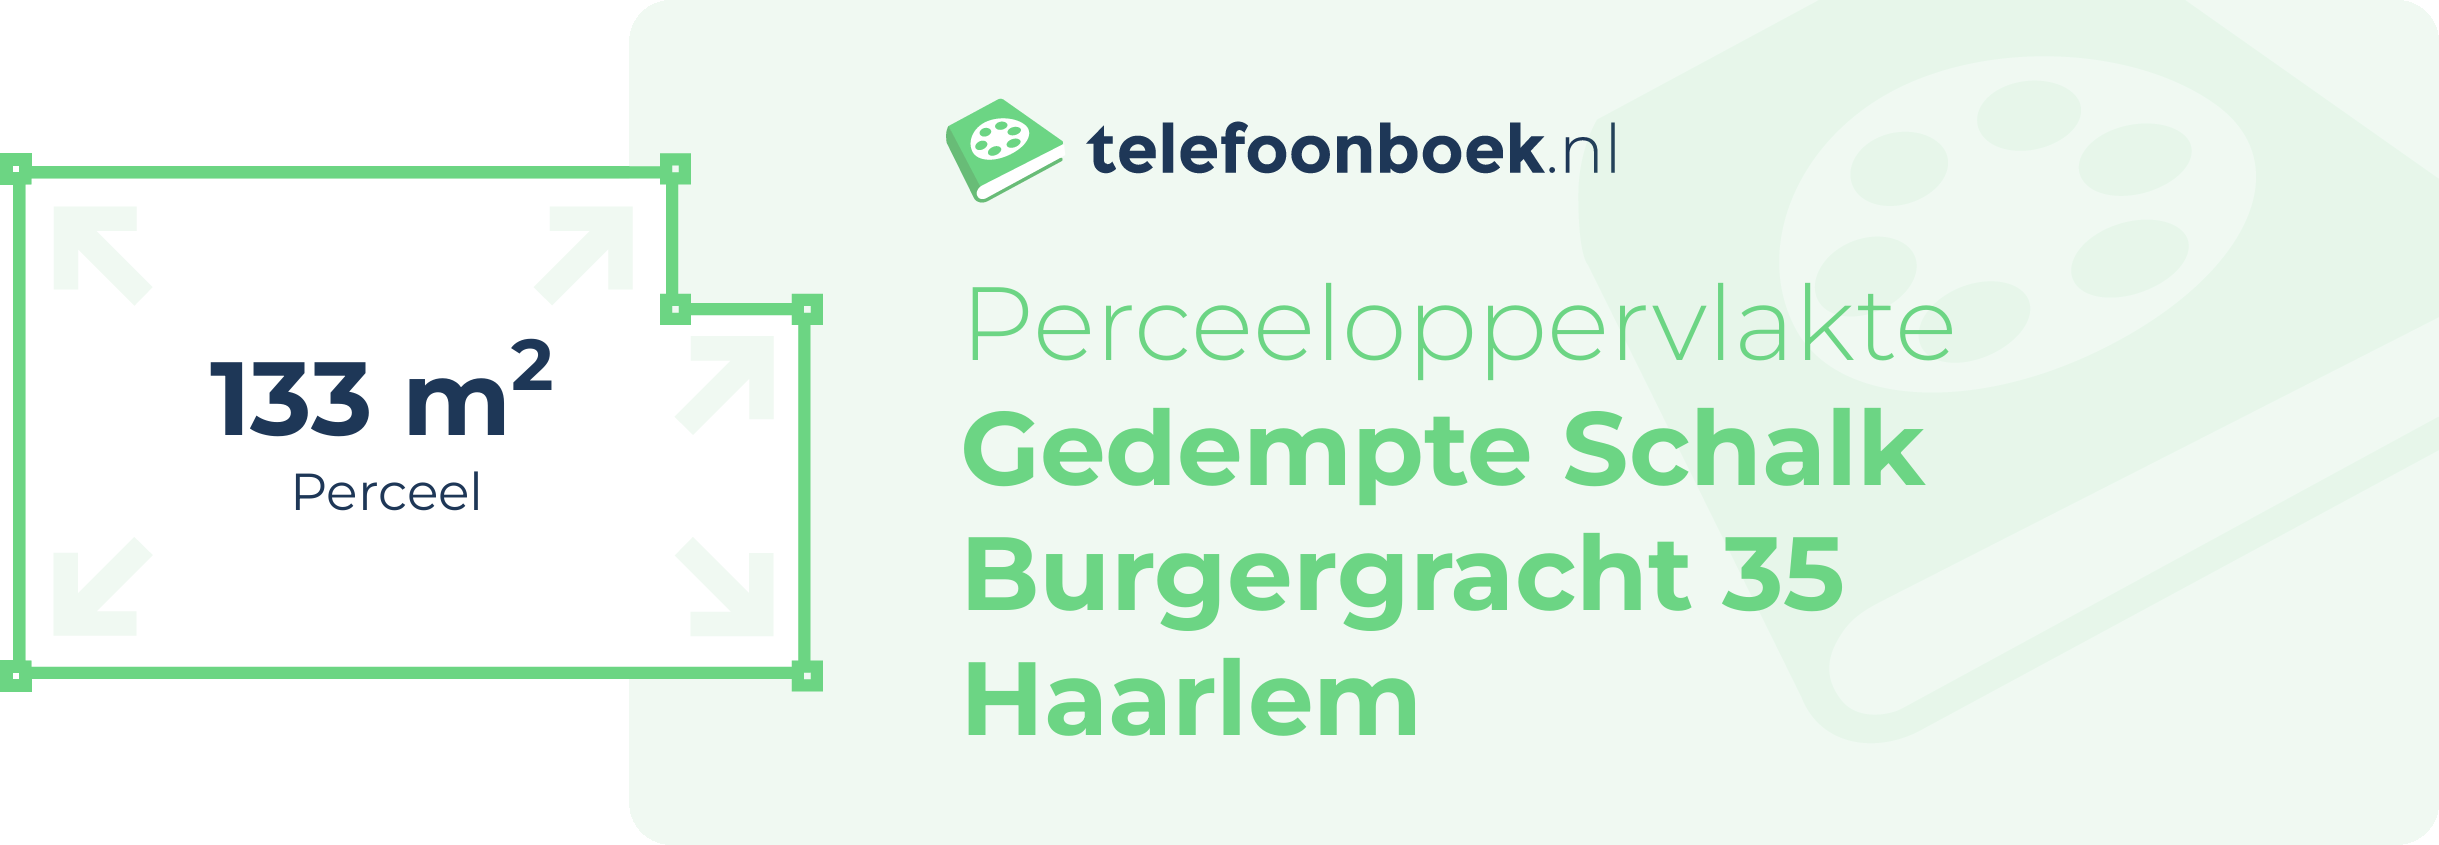 Perceeloppervlakte Gedempte Schalk Burgergracht 35 Haarlem